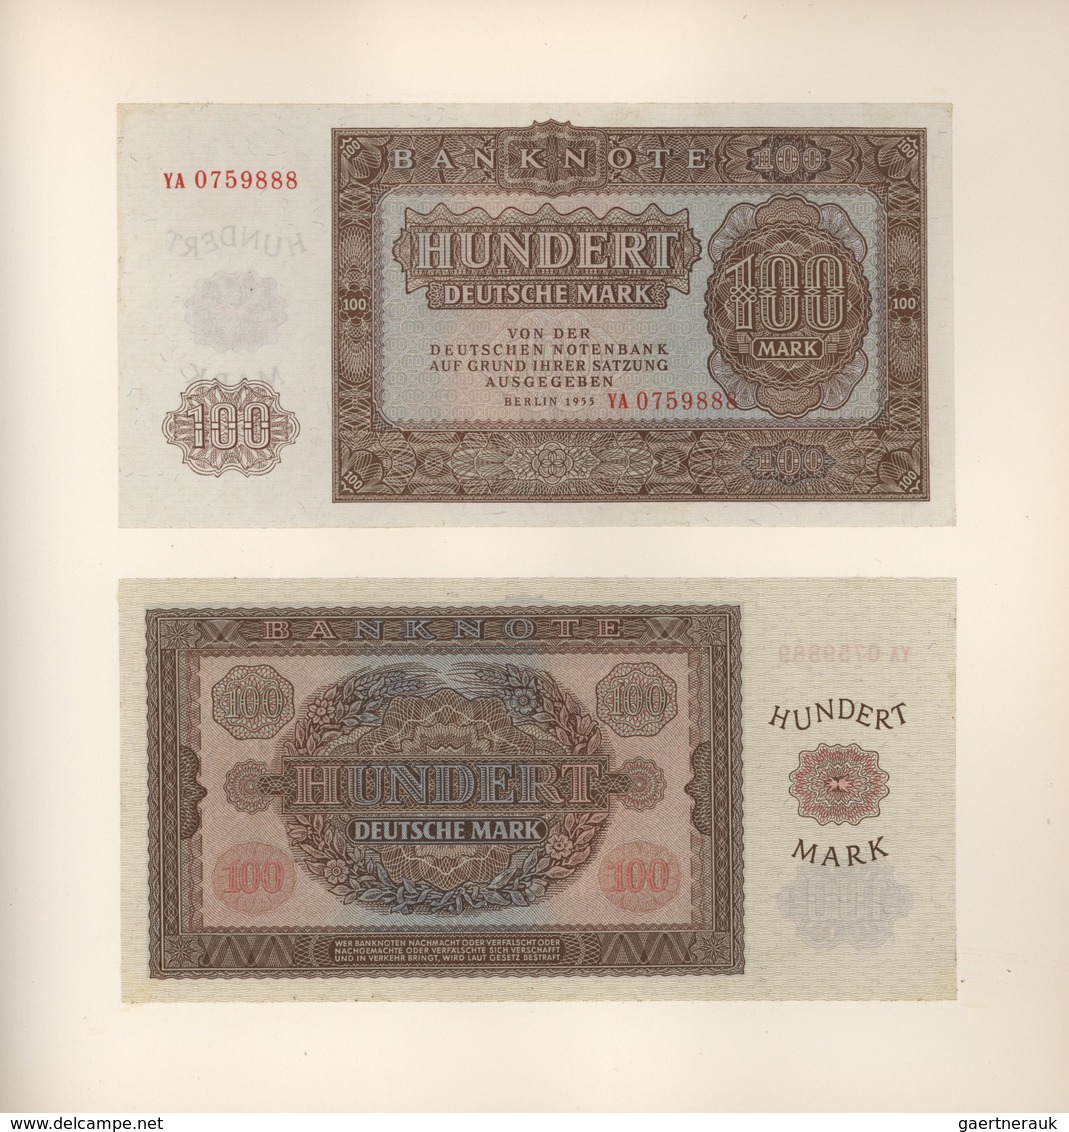 Deutschland - DDR: Ministerbuch des Ministerrates der DDR mit allen Banknoten von 1948 – 1975, jewei